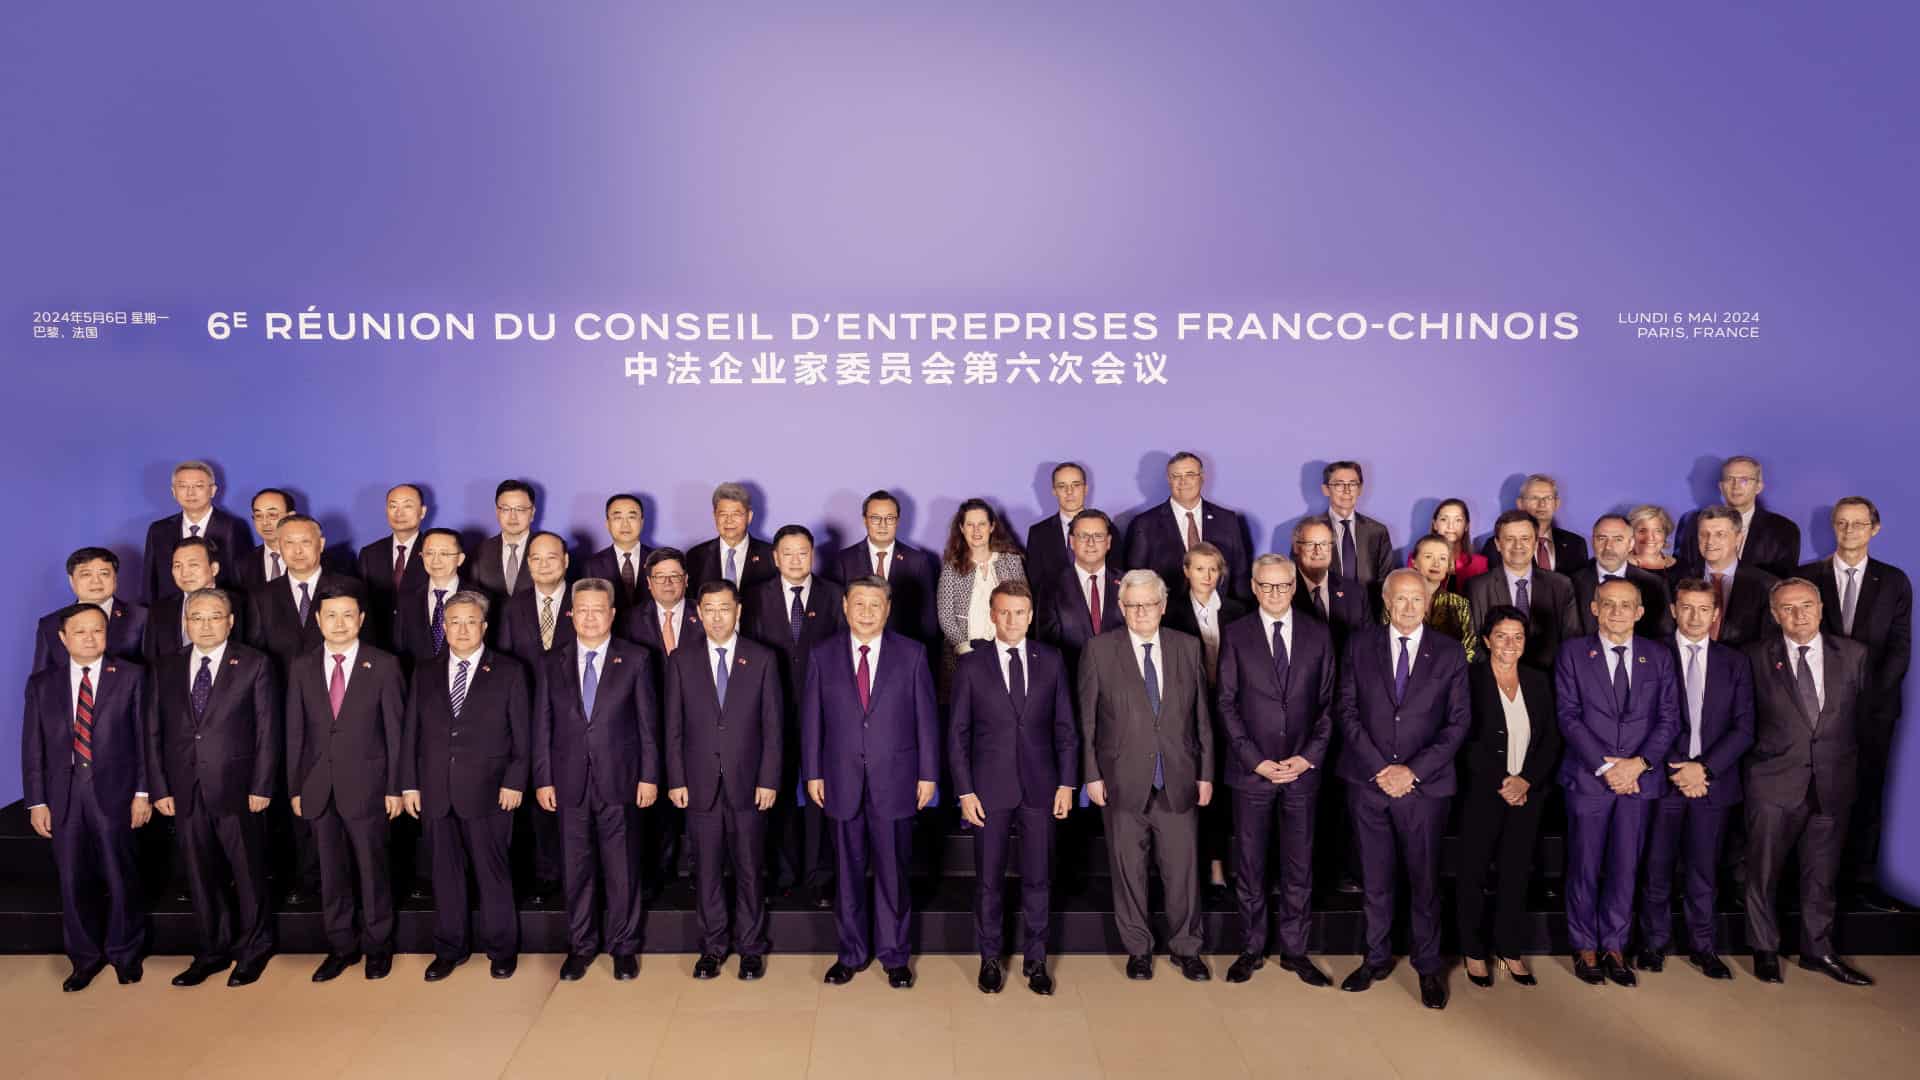 6e réunion du conseil d'entreprises franco-chinois